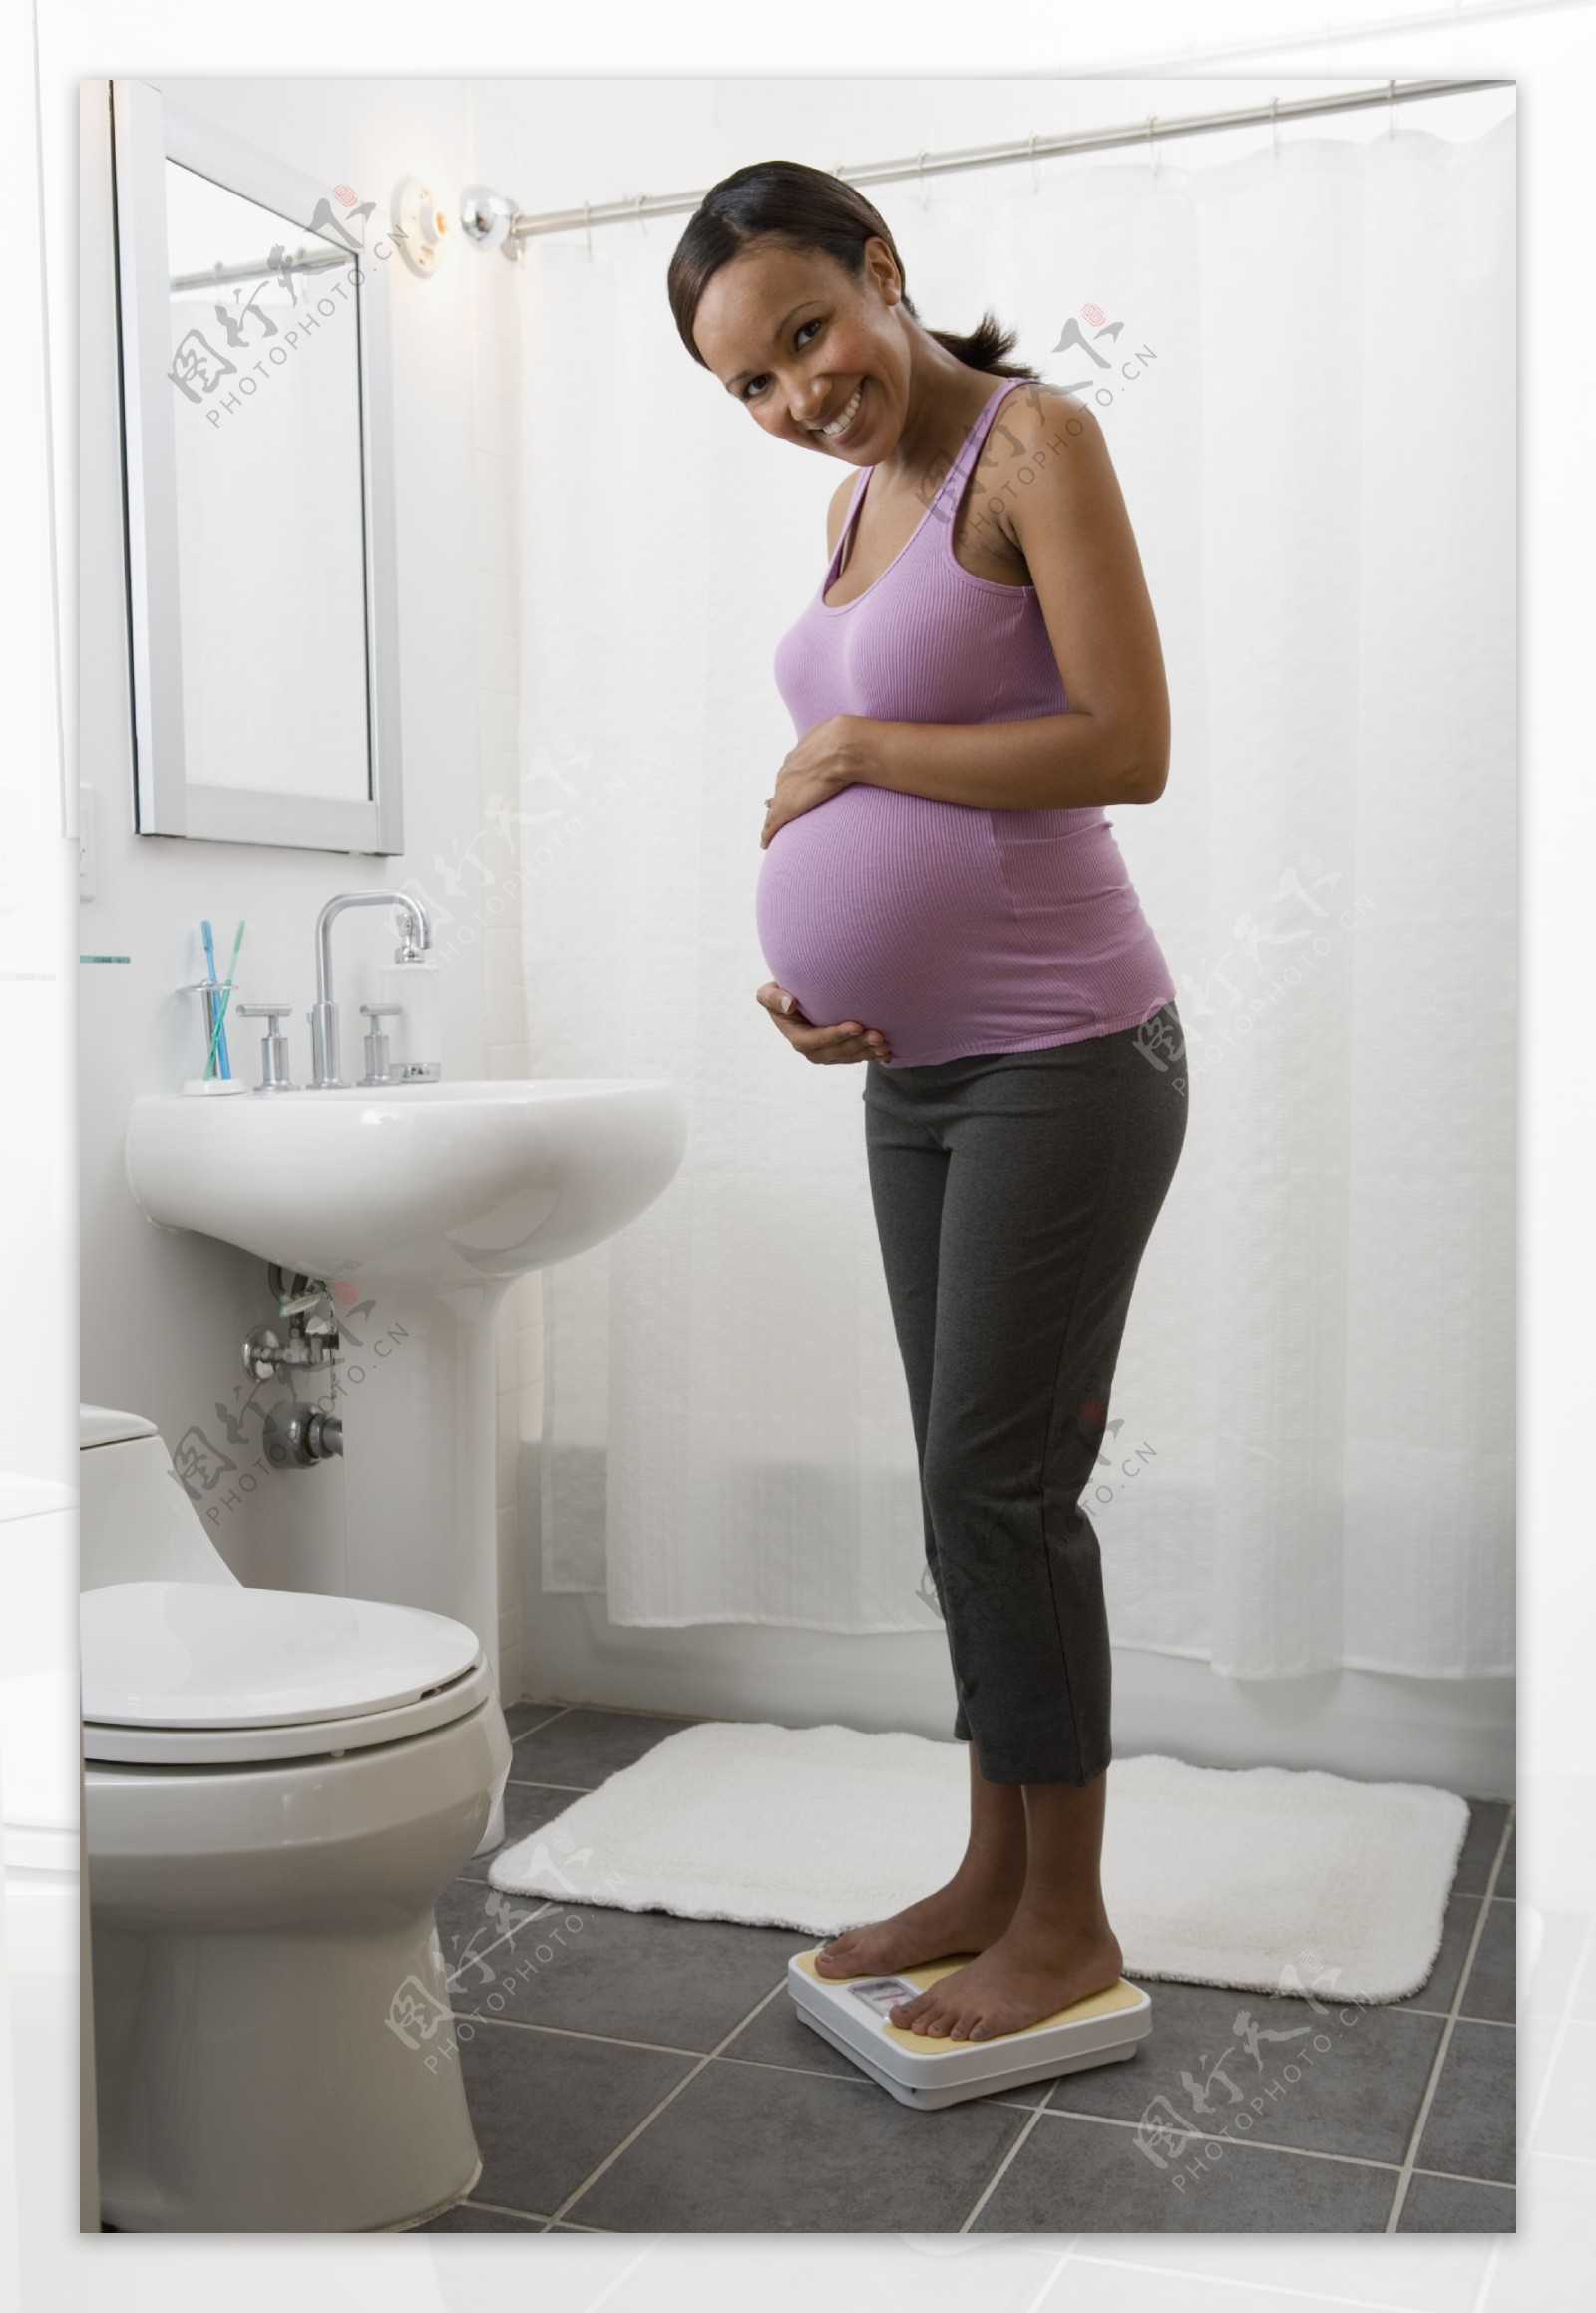 称体重的黑人孕妇图片